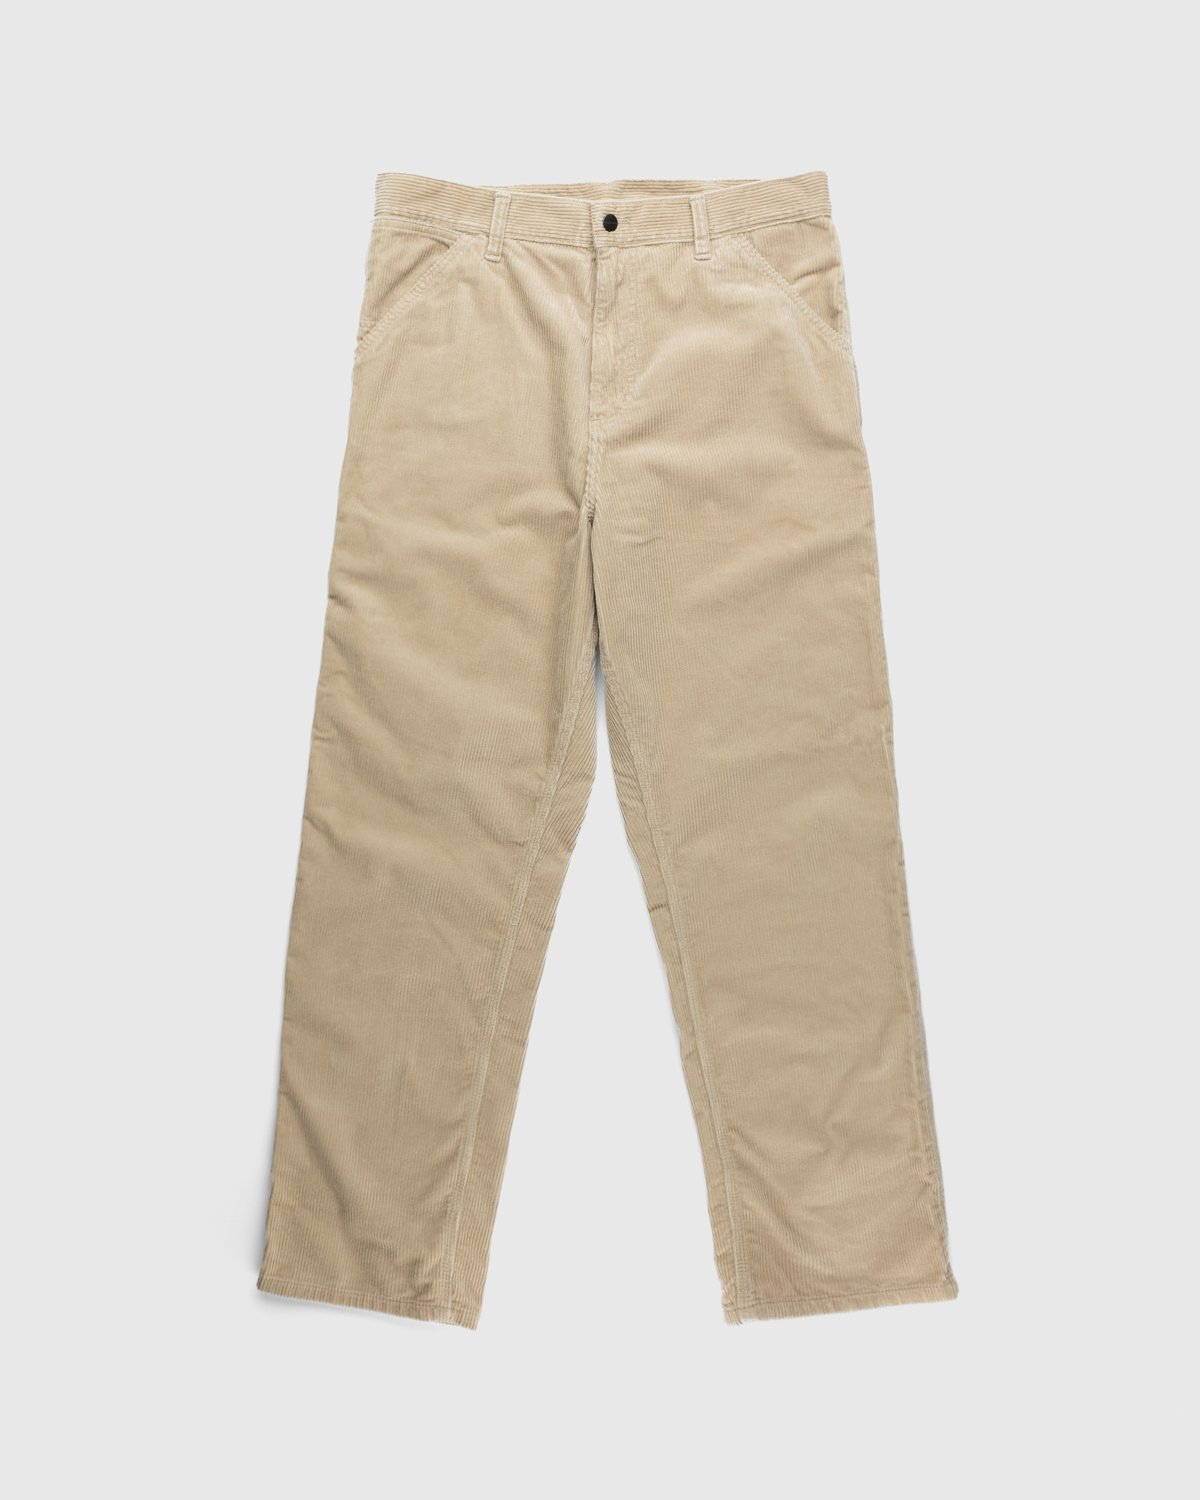 Carhartt WIP - Ruck Single Knee Pant Beige - Clothing - Brown - Image 1